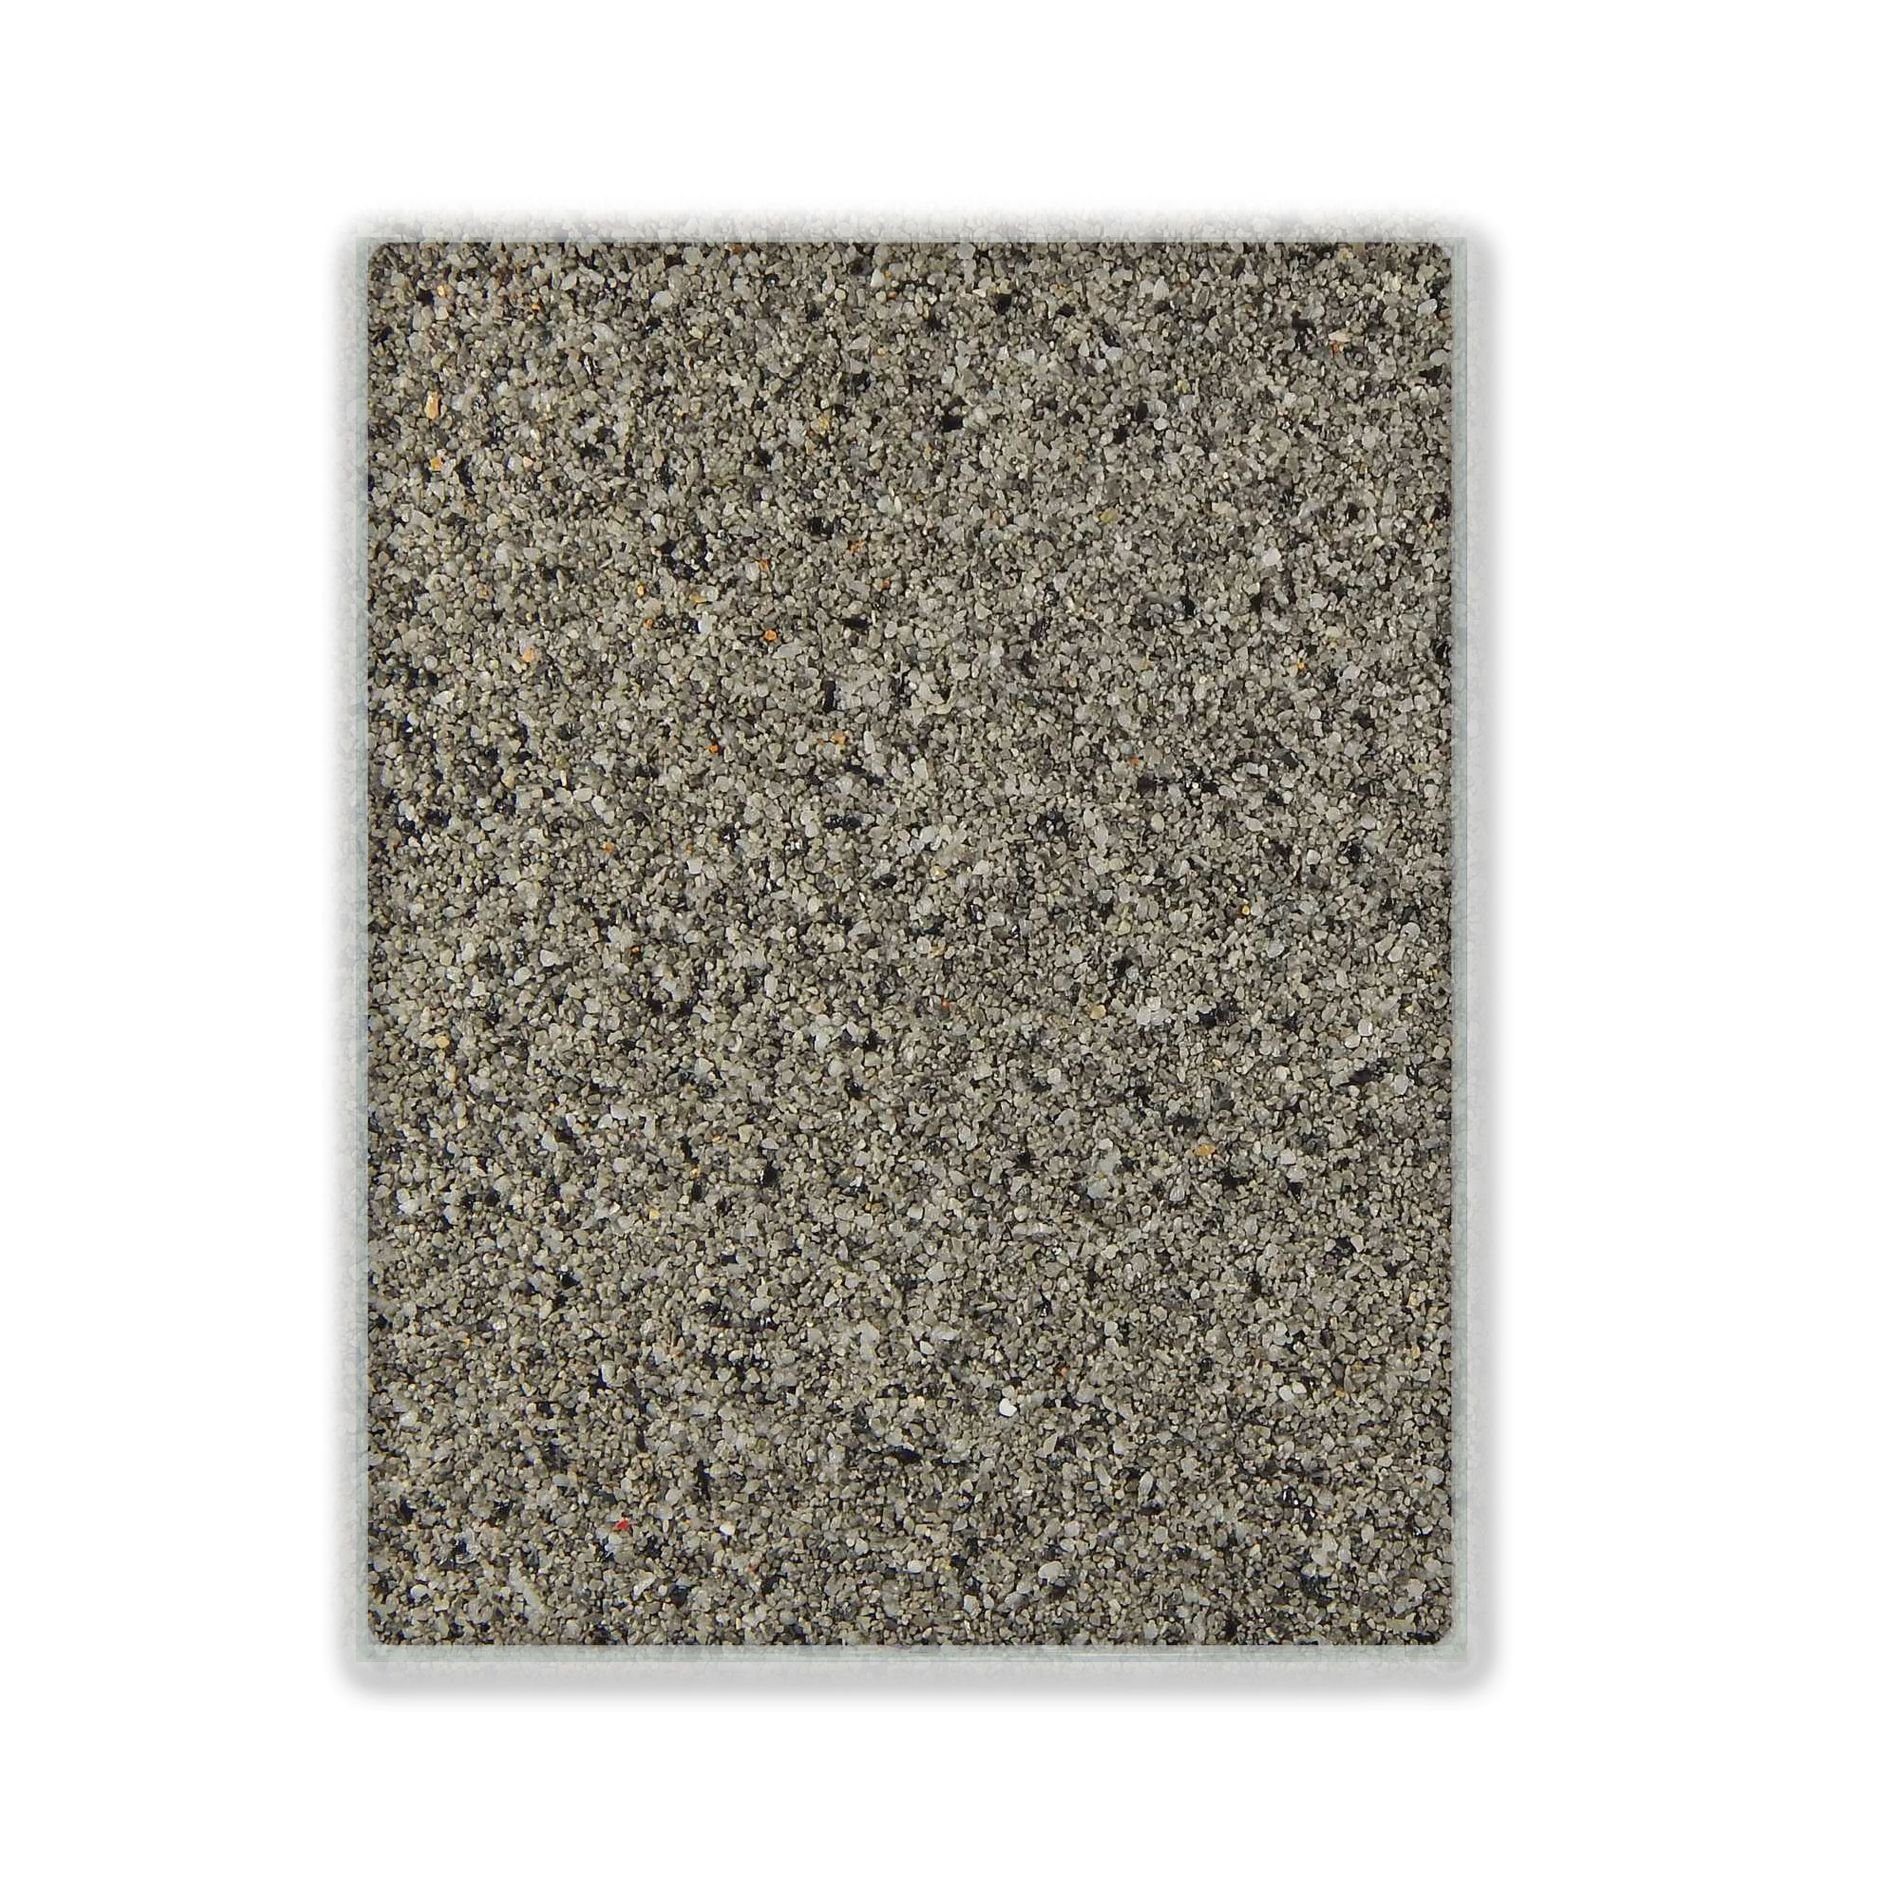 Terralith® Designboden Farbmuster Kompaktboden -contrasto uno-, Originalware aus der Charge, die wir in diesem Moment im Abverkauf haben.